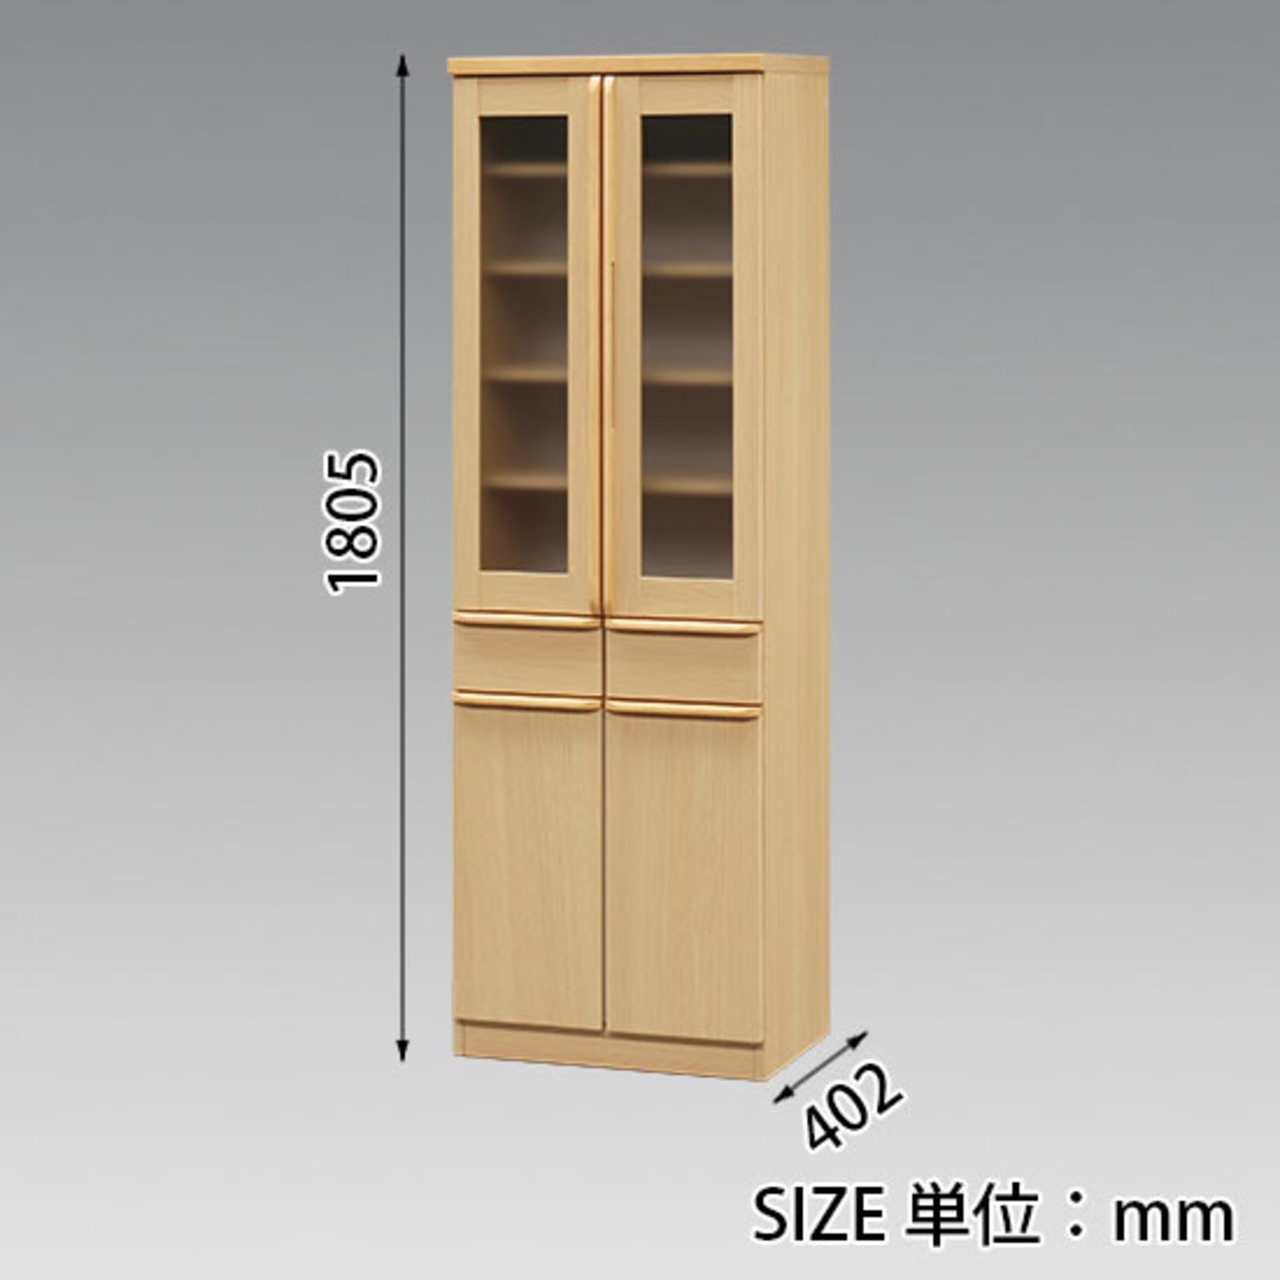 【幅60】キッチンボード ダイニングボード 食器棚 収納 木目調 (全2色)